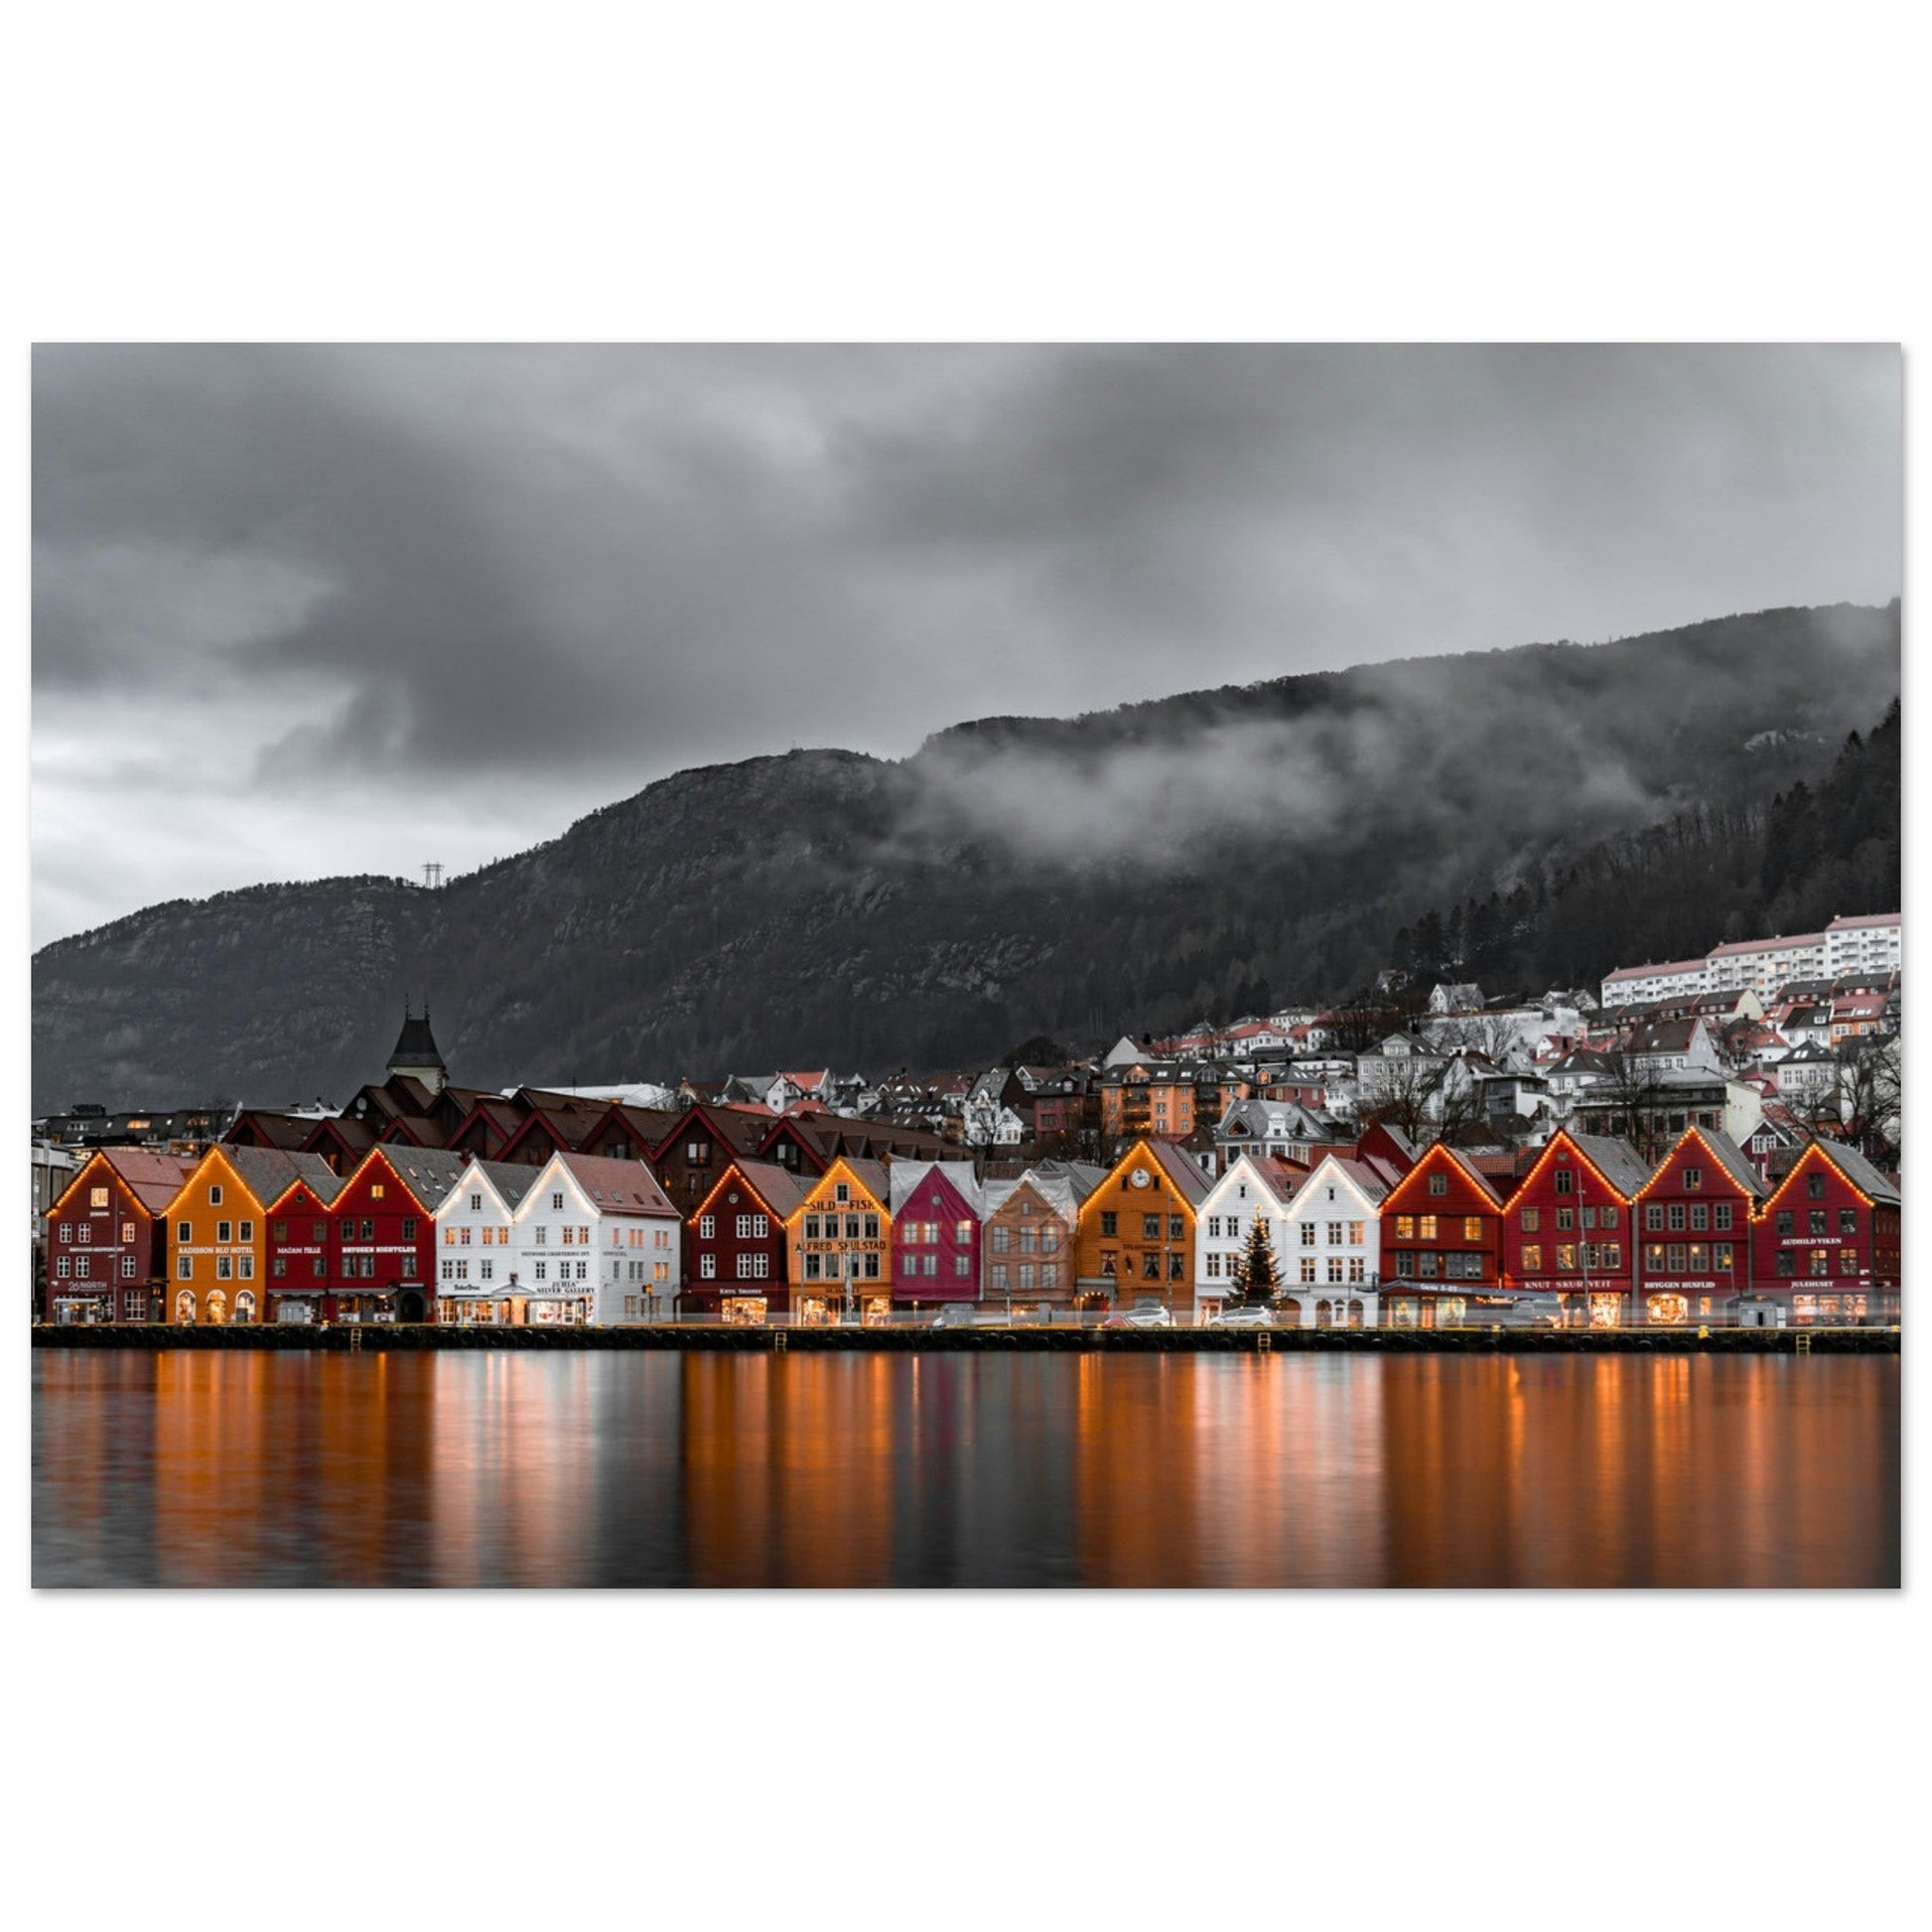 Vente Photo des Îles Lofoten, Norvège #5 - Tableau photo paysage